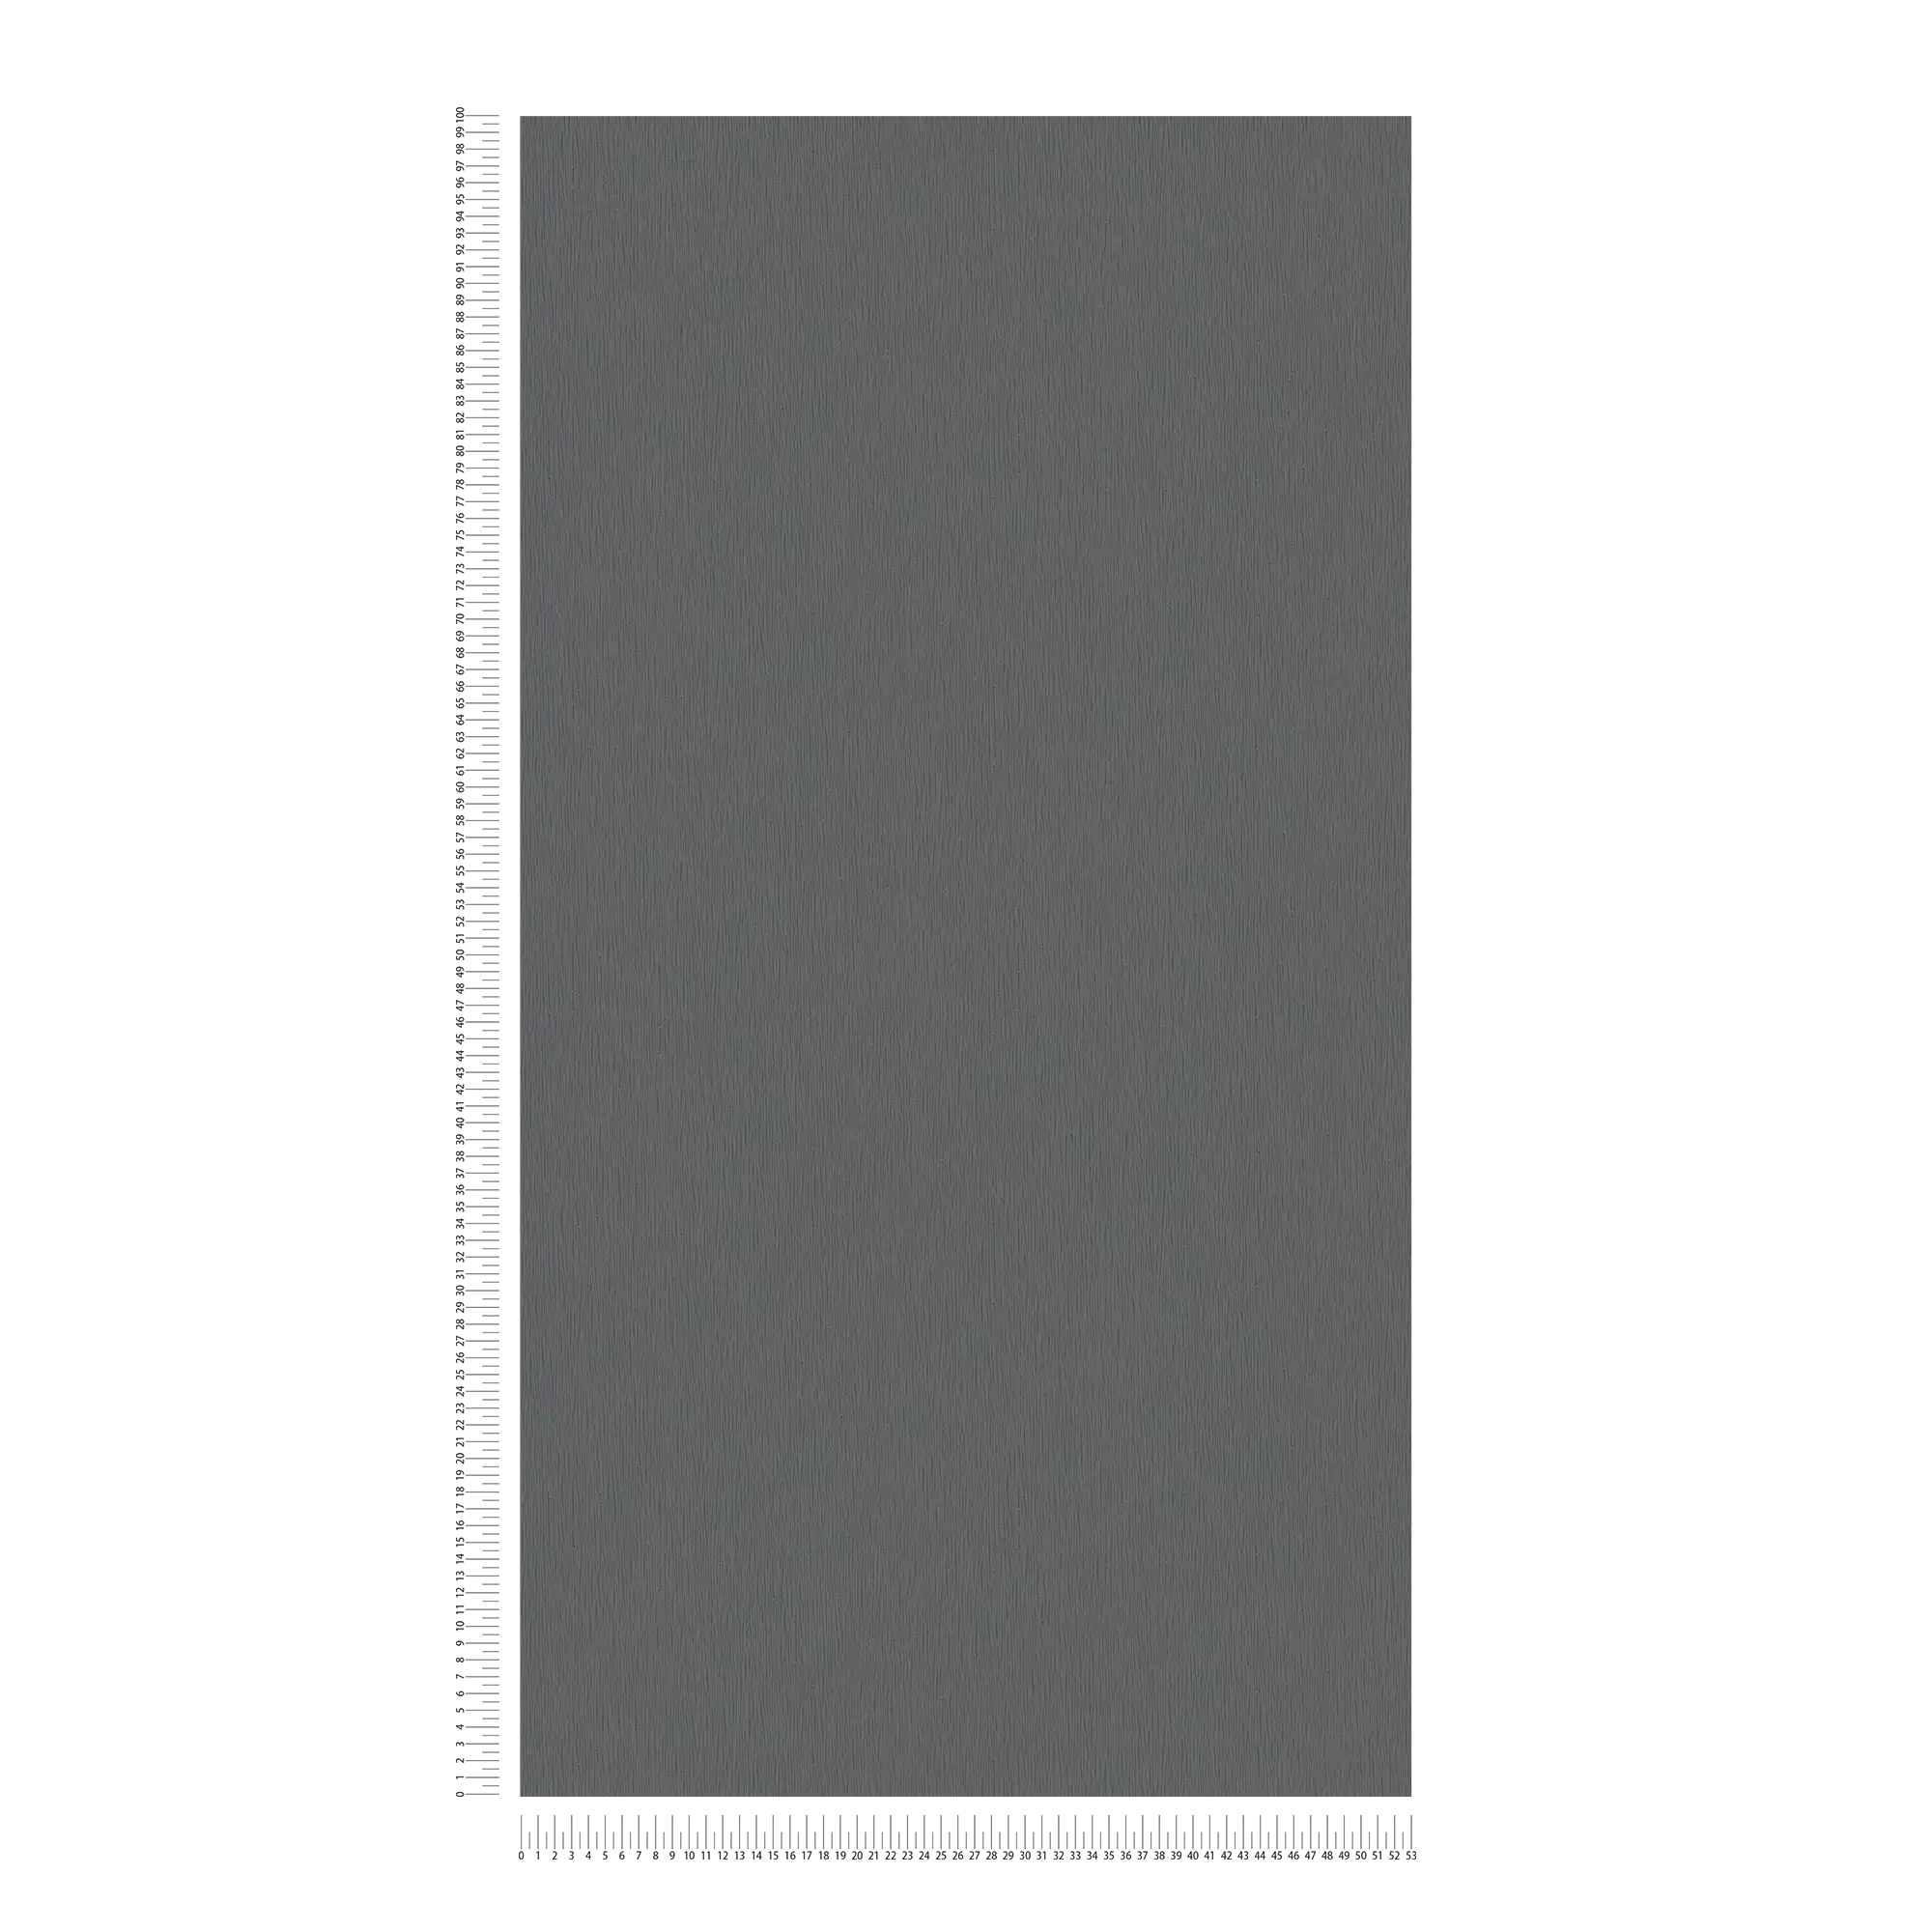             Papier peint intissé anthracite avec motif structuré naturel ton sur ton - métallique, noir
        